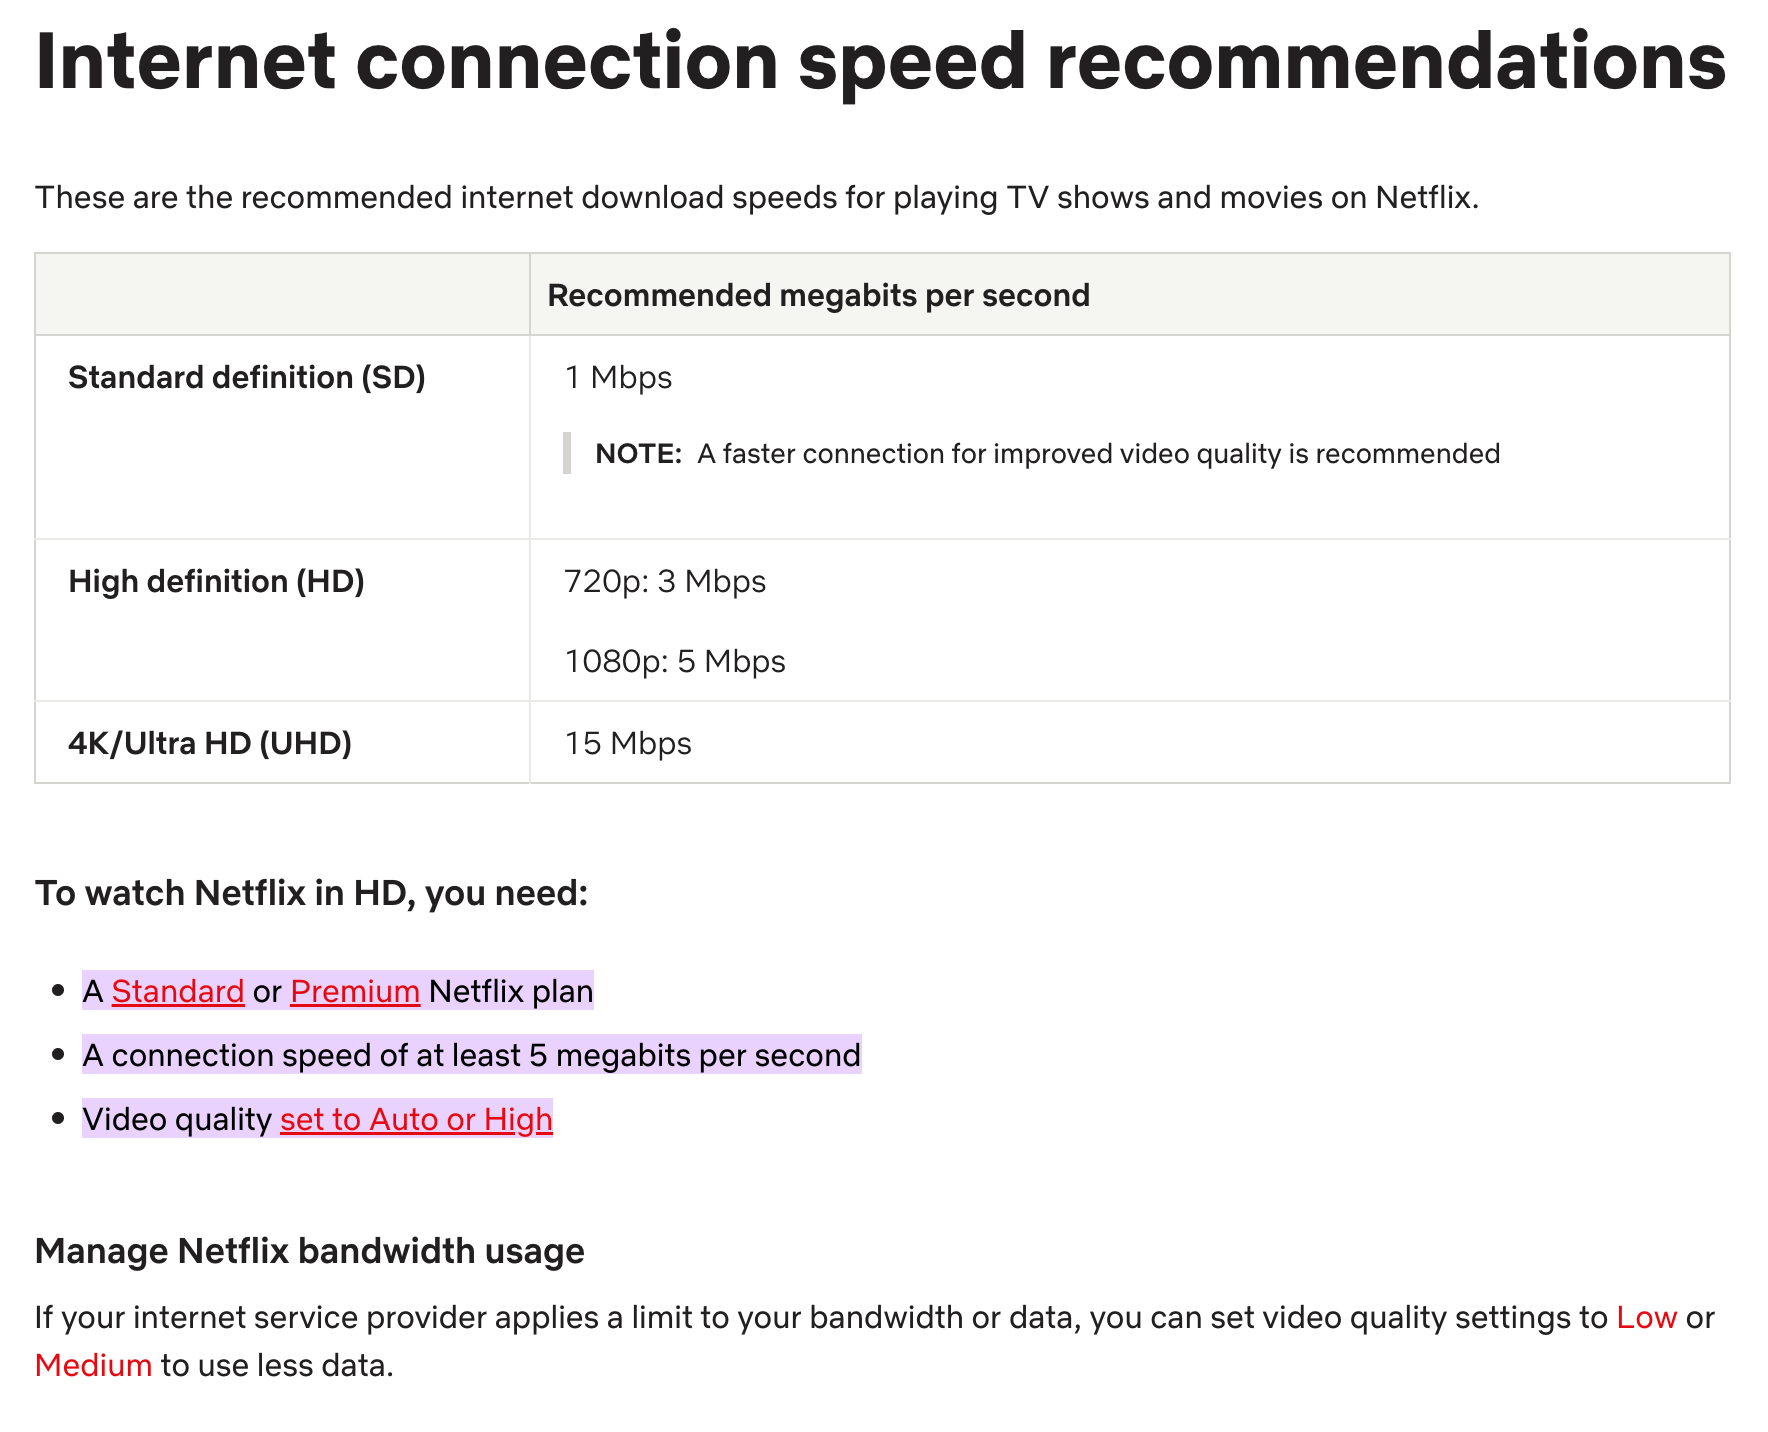 Tangkapan layar rekomendasi koneksi internet Netflix